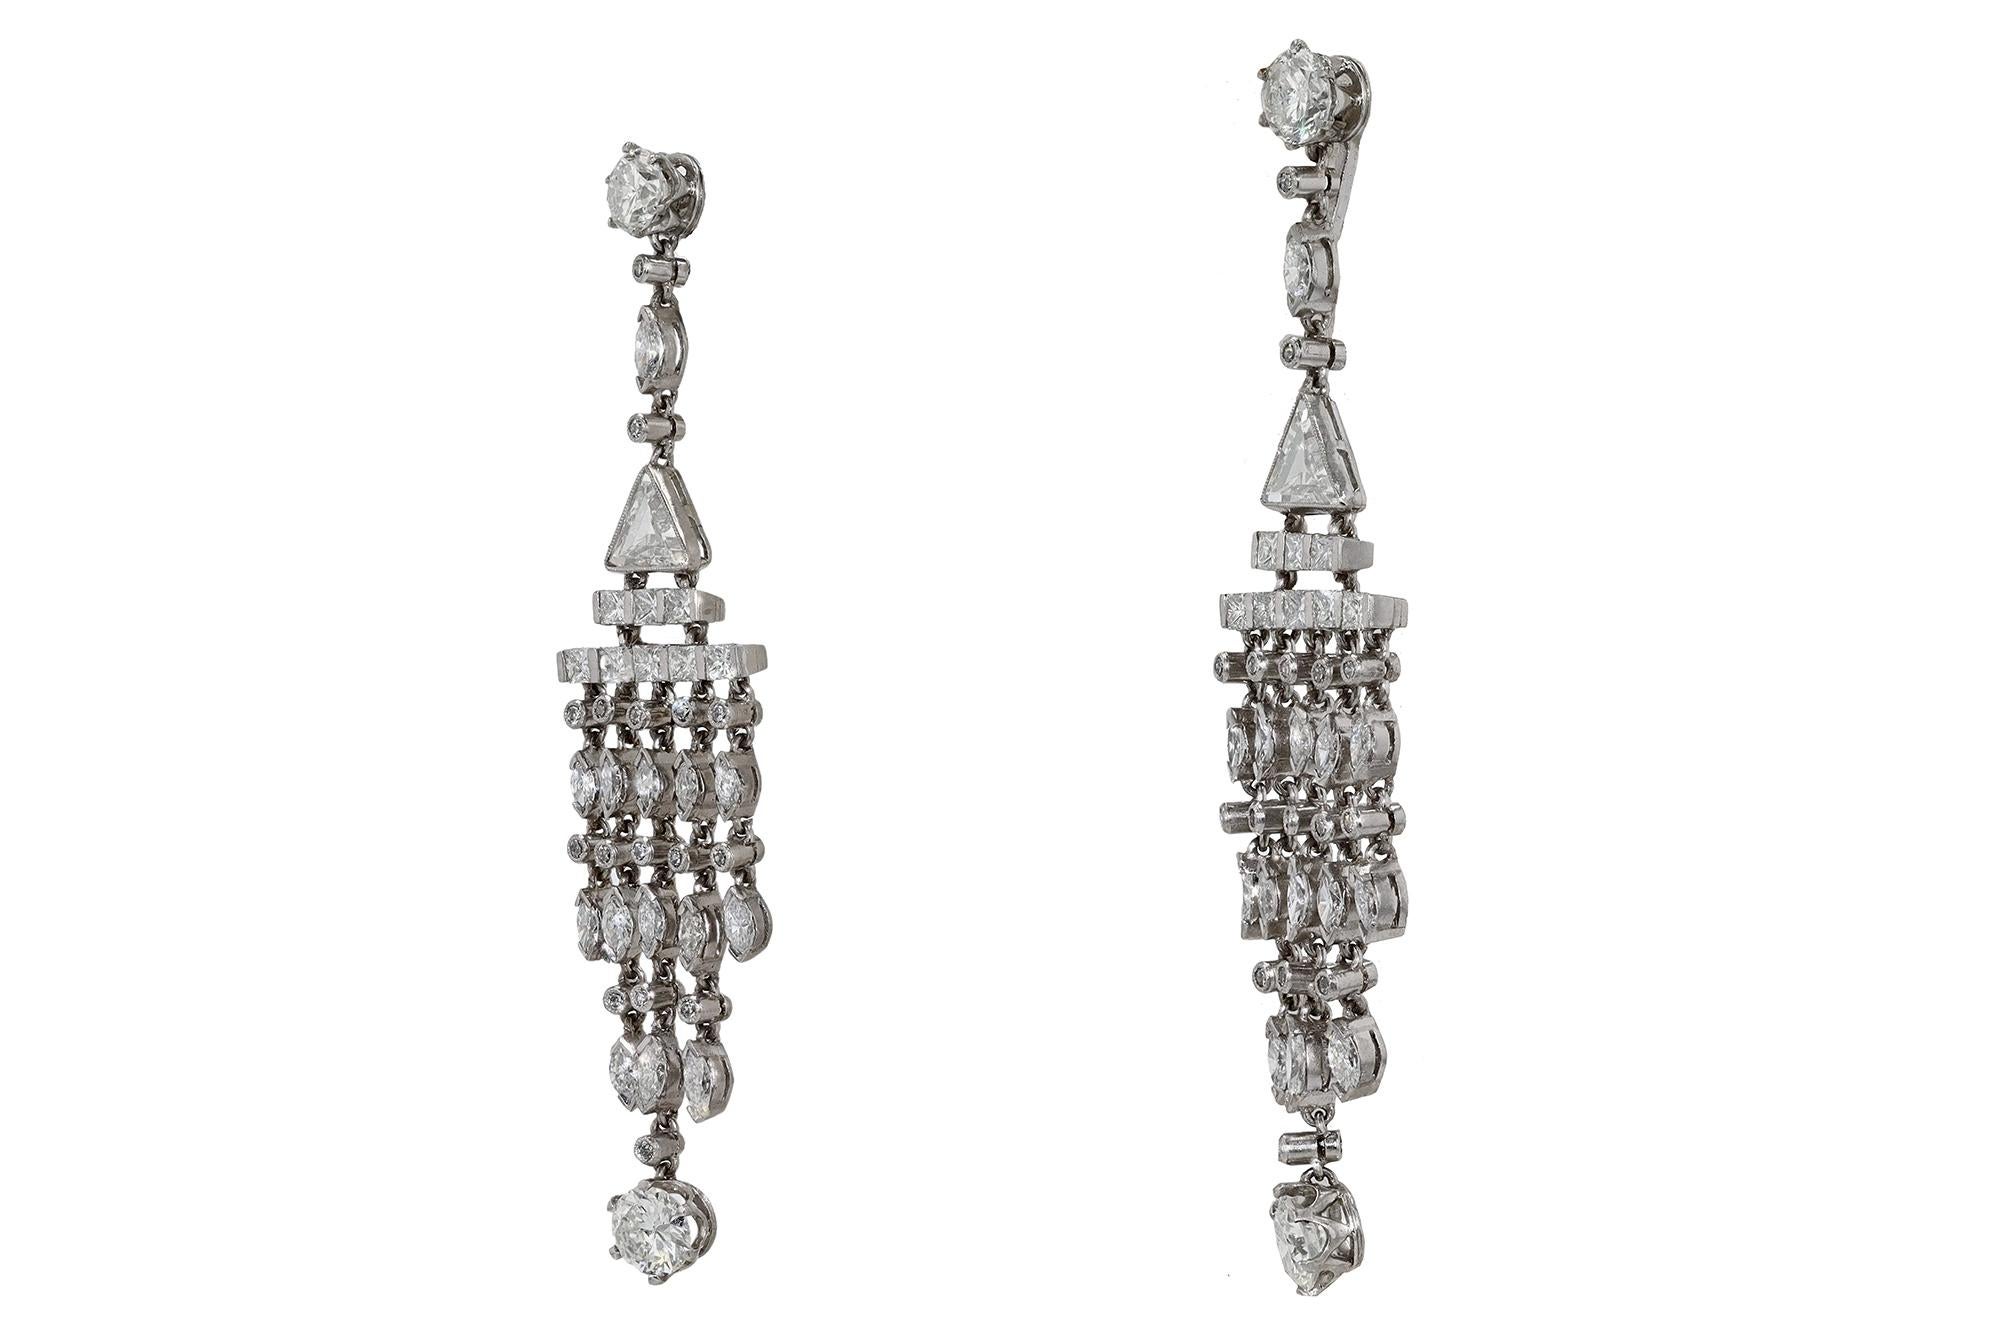 Marquise Cut Art Deco Style 4 Carat Diamond Chandelier Earrings